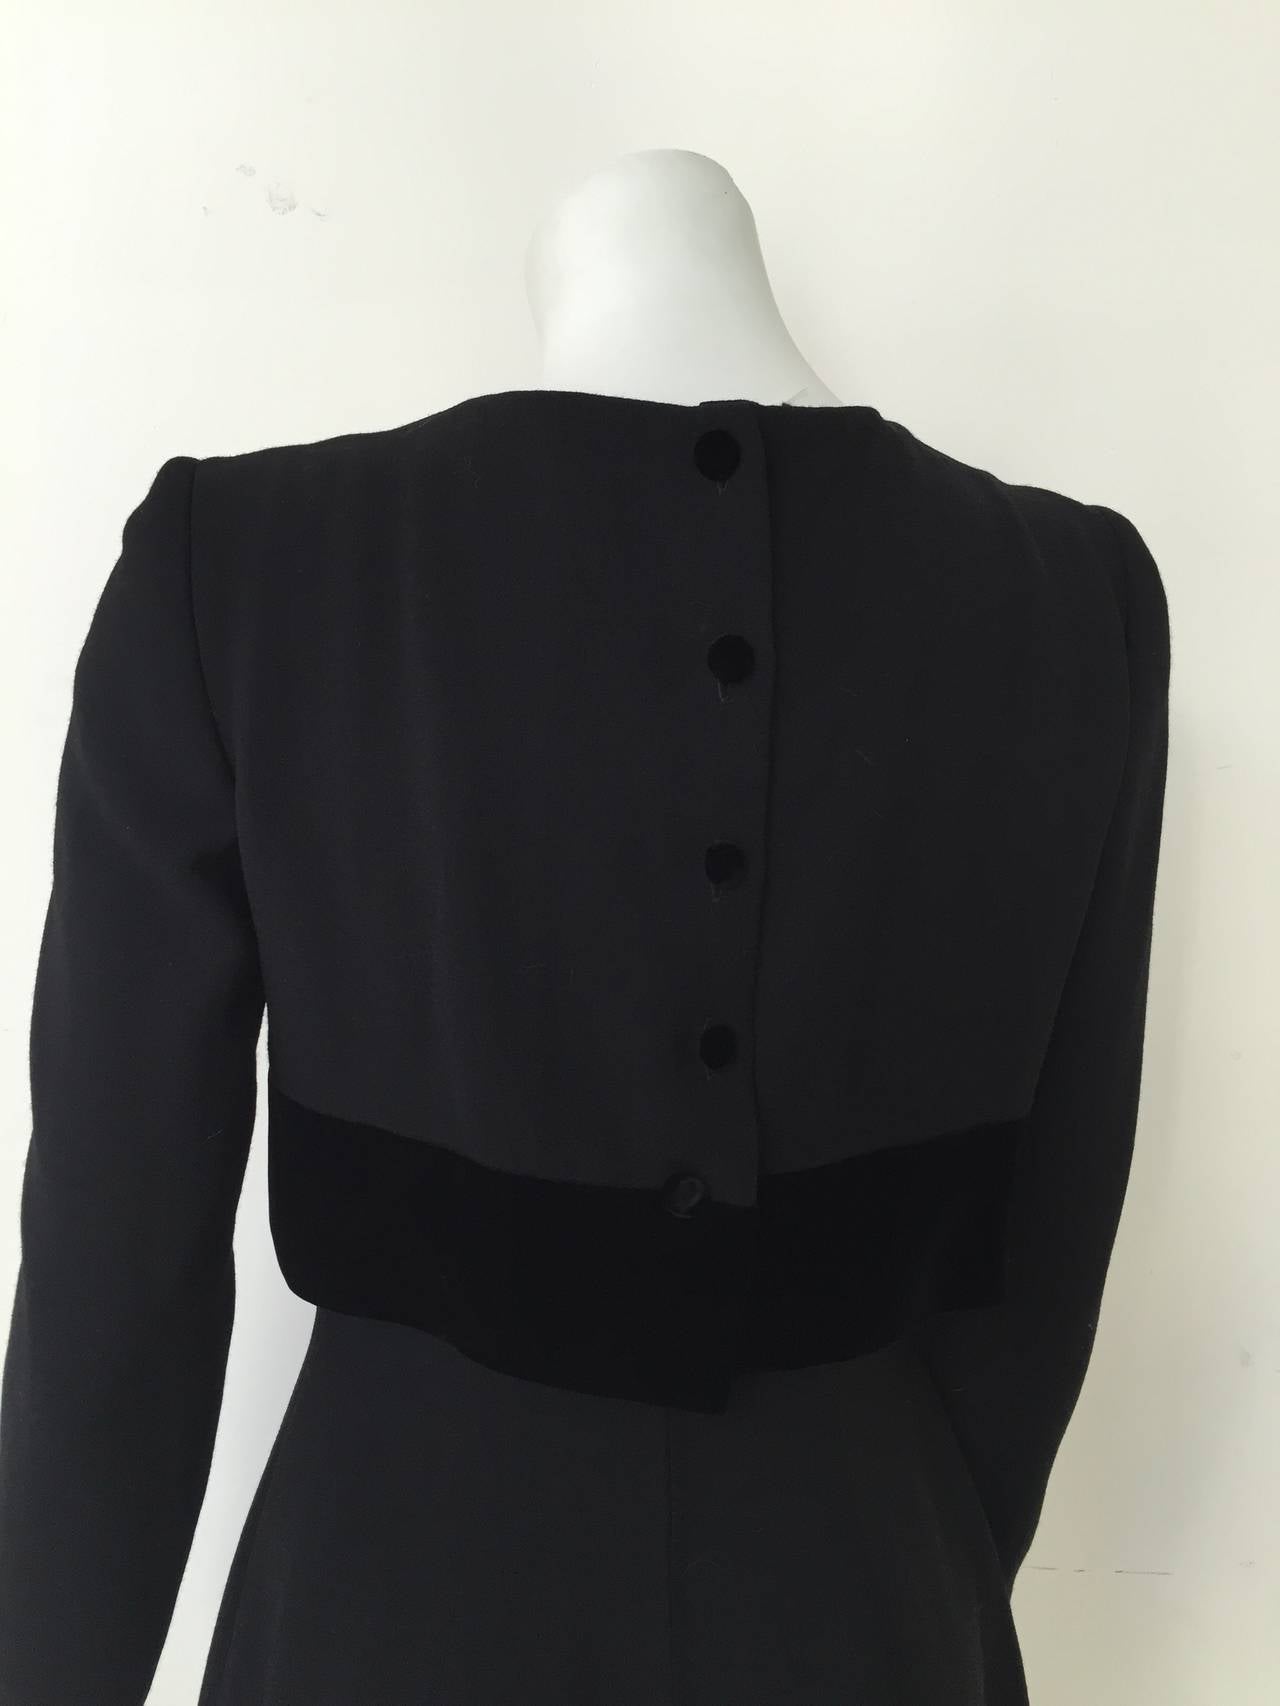 Women's  Oscar de la Renta 90s black dress size 6. For Sale